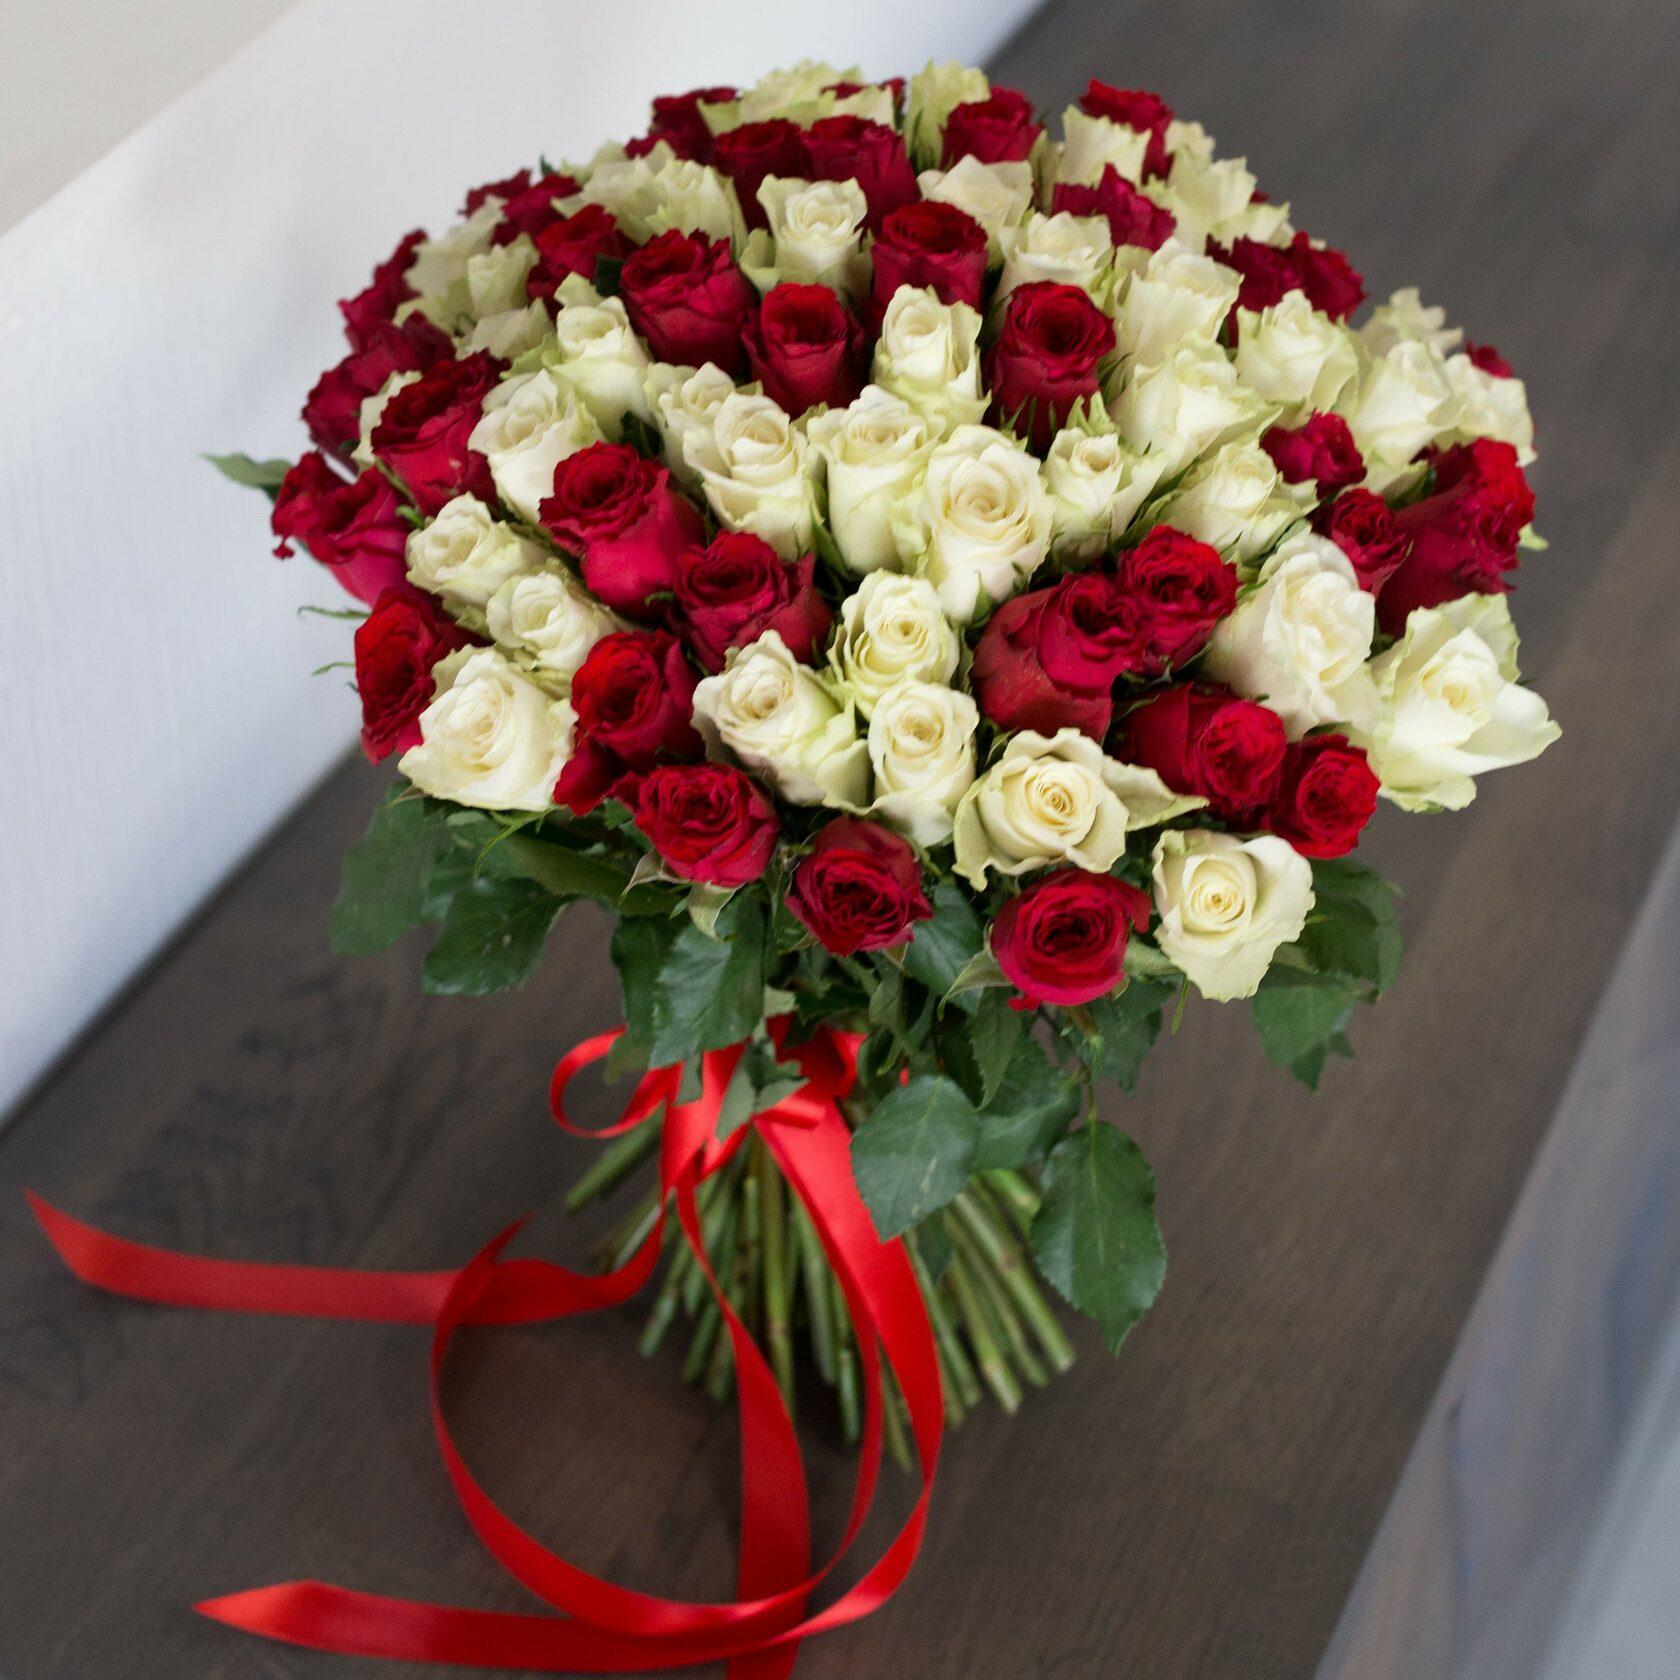 Бело розовый красный букет. Букет роз. Букет из белых и красных роз. Красивый букет из красных и белых роз.